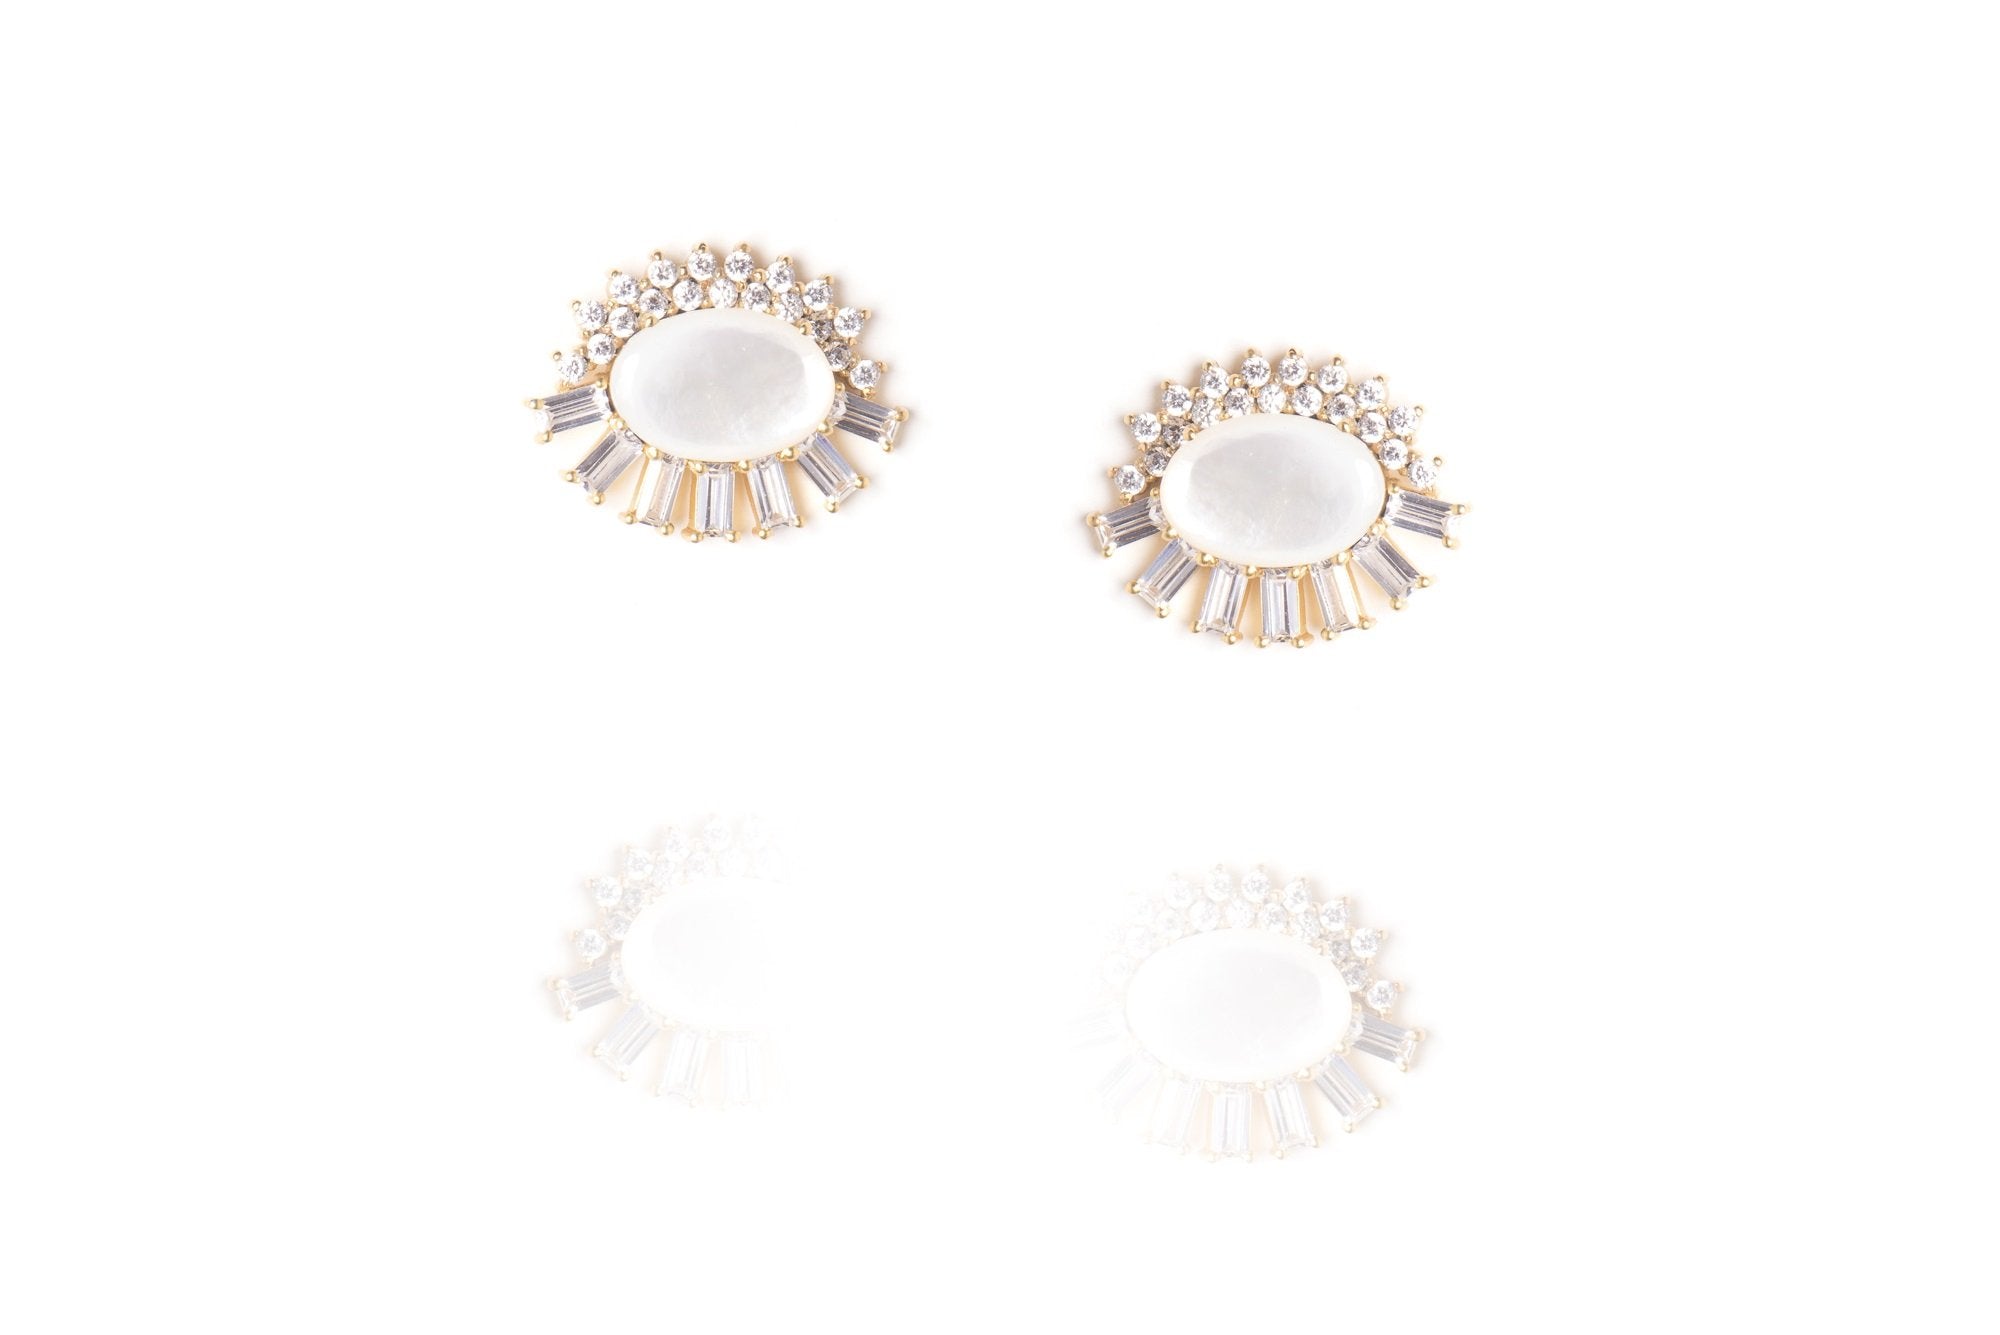 Opaline Earrings in White